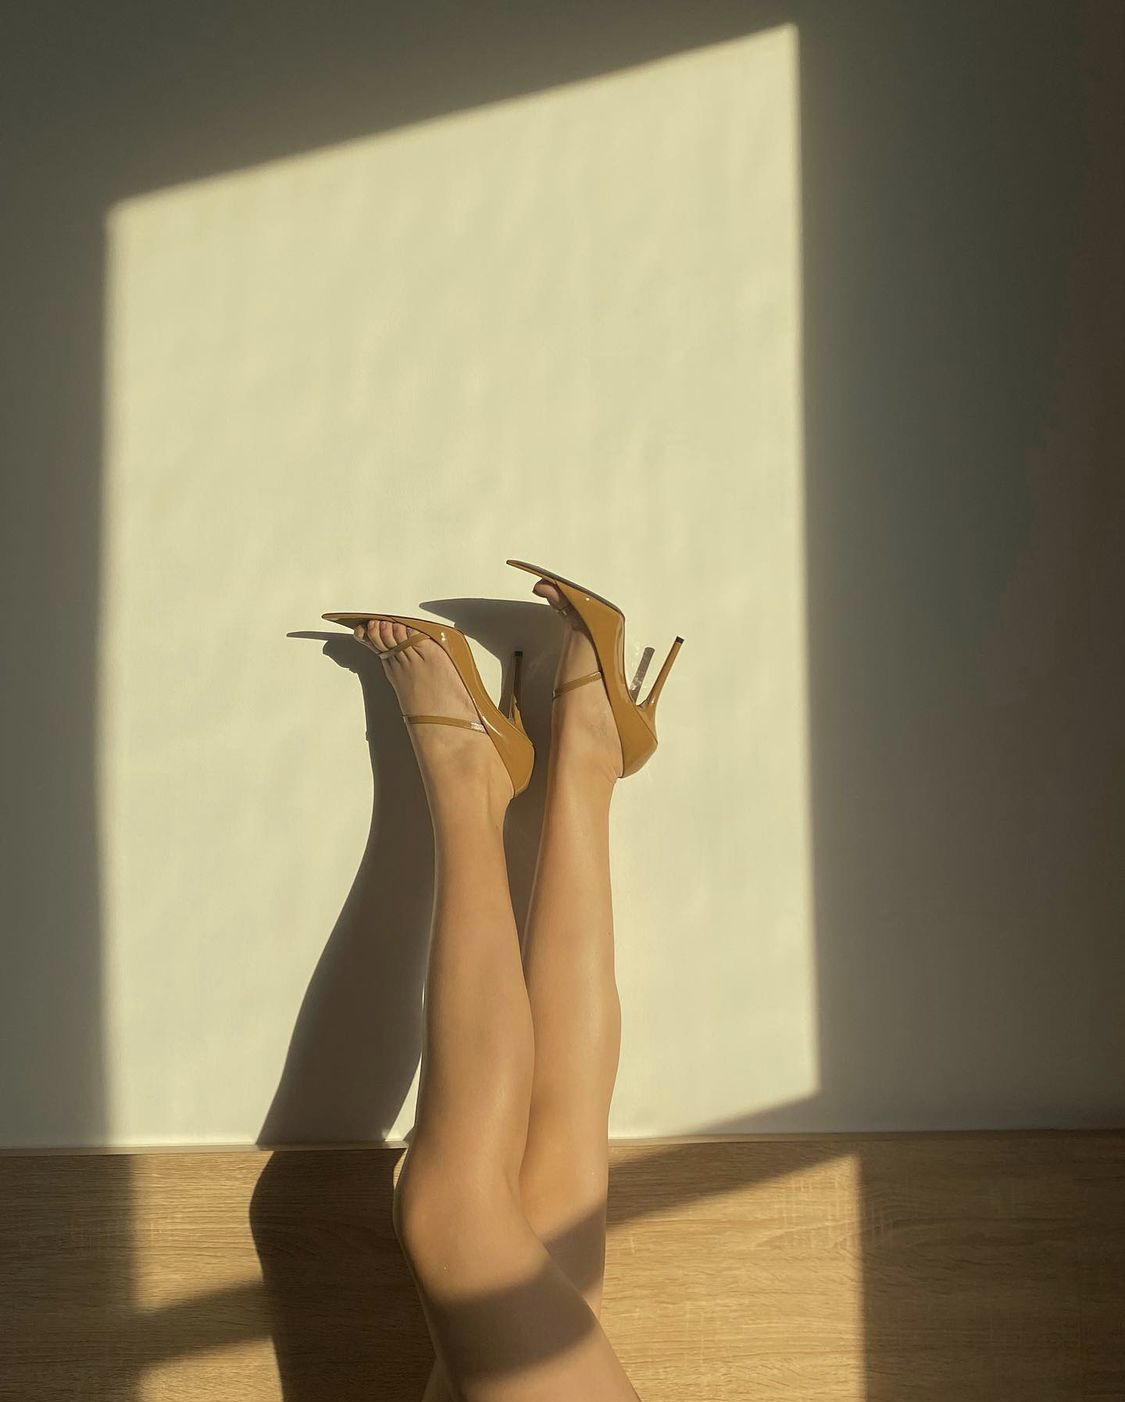 Item 'chốt sổ' trong danh sách của 'Cô Em Trendy' là một đôi sandal cao gót màu nâu của Fendi. Vì có phần dây co giãn nên bạn có thể chọn đúng size giày hoặc nhỏ hơn một size cũng không sao. Khánh Linh cũng review rằng đôi giày này đi khá là êm chân nhưng nếu đi lâu thì phần dây sẽ thắt chặt lại nên sẽ dễ bị bầm chân